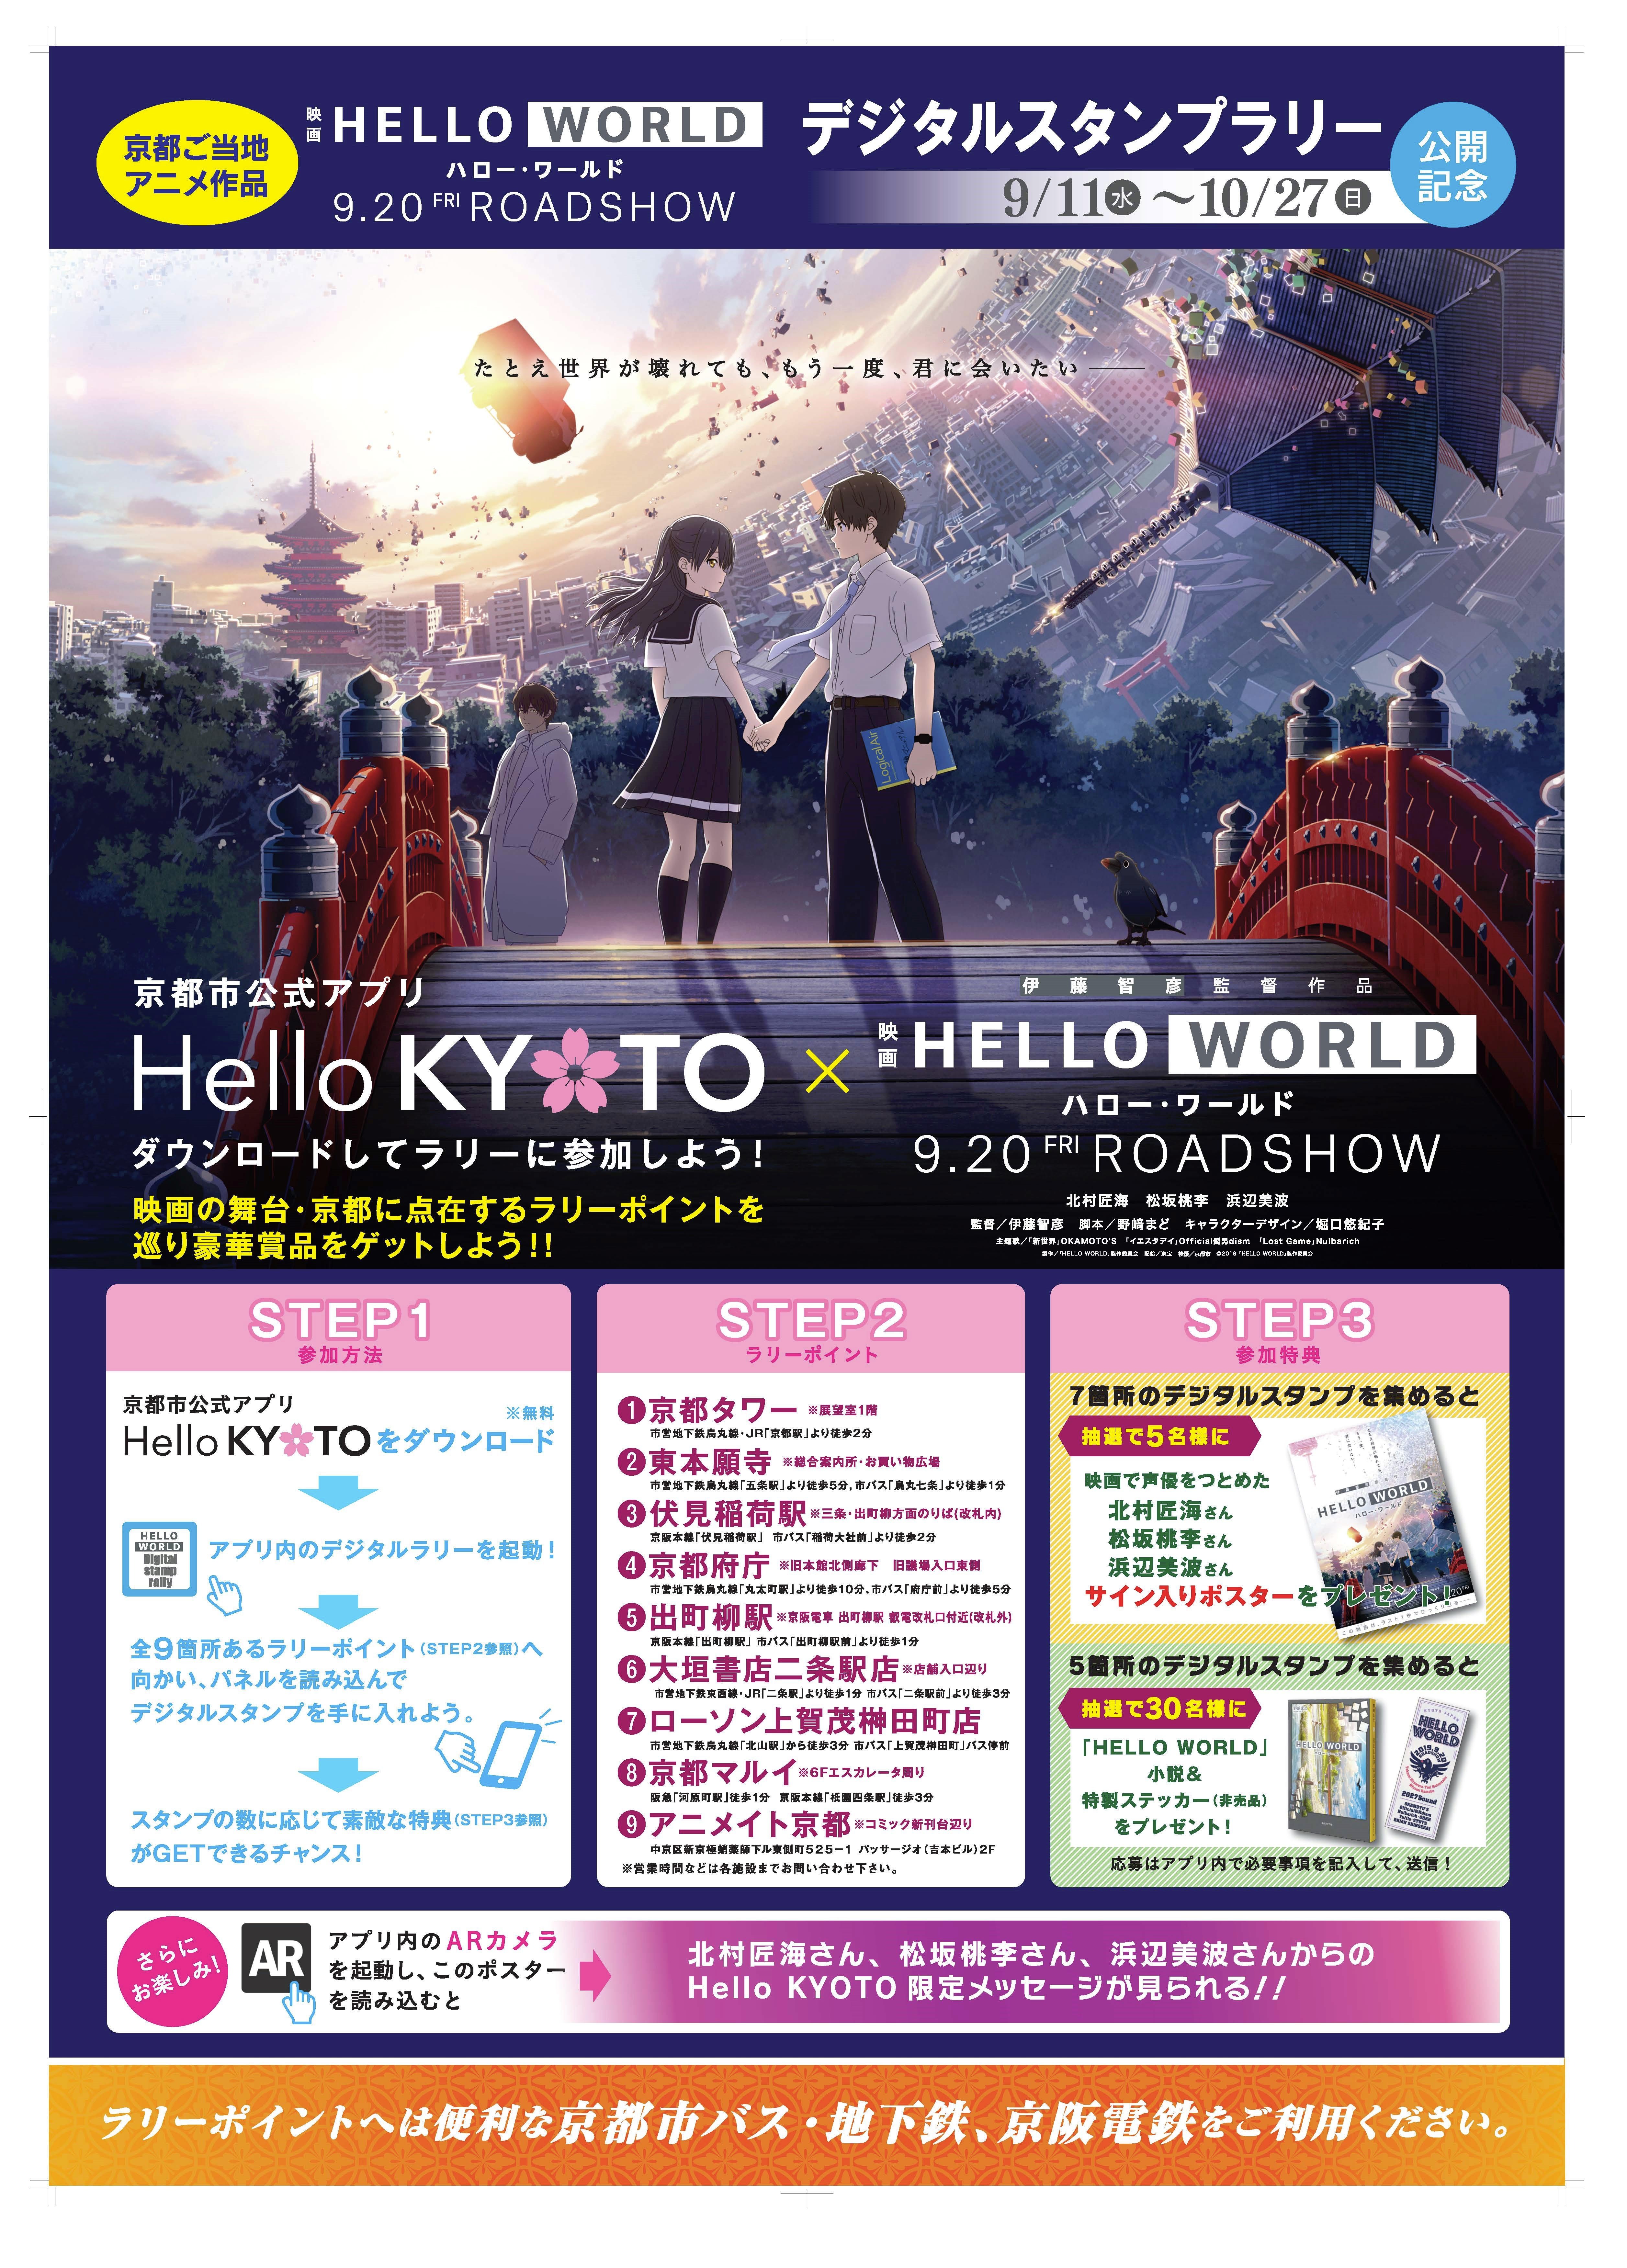 京都が舞台のアニメ映画 Hello World とのコラボレーション企画 京都市 総合企画局のプレスリリース